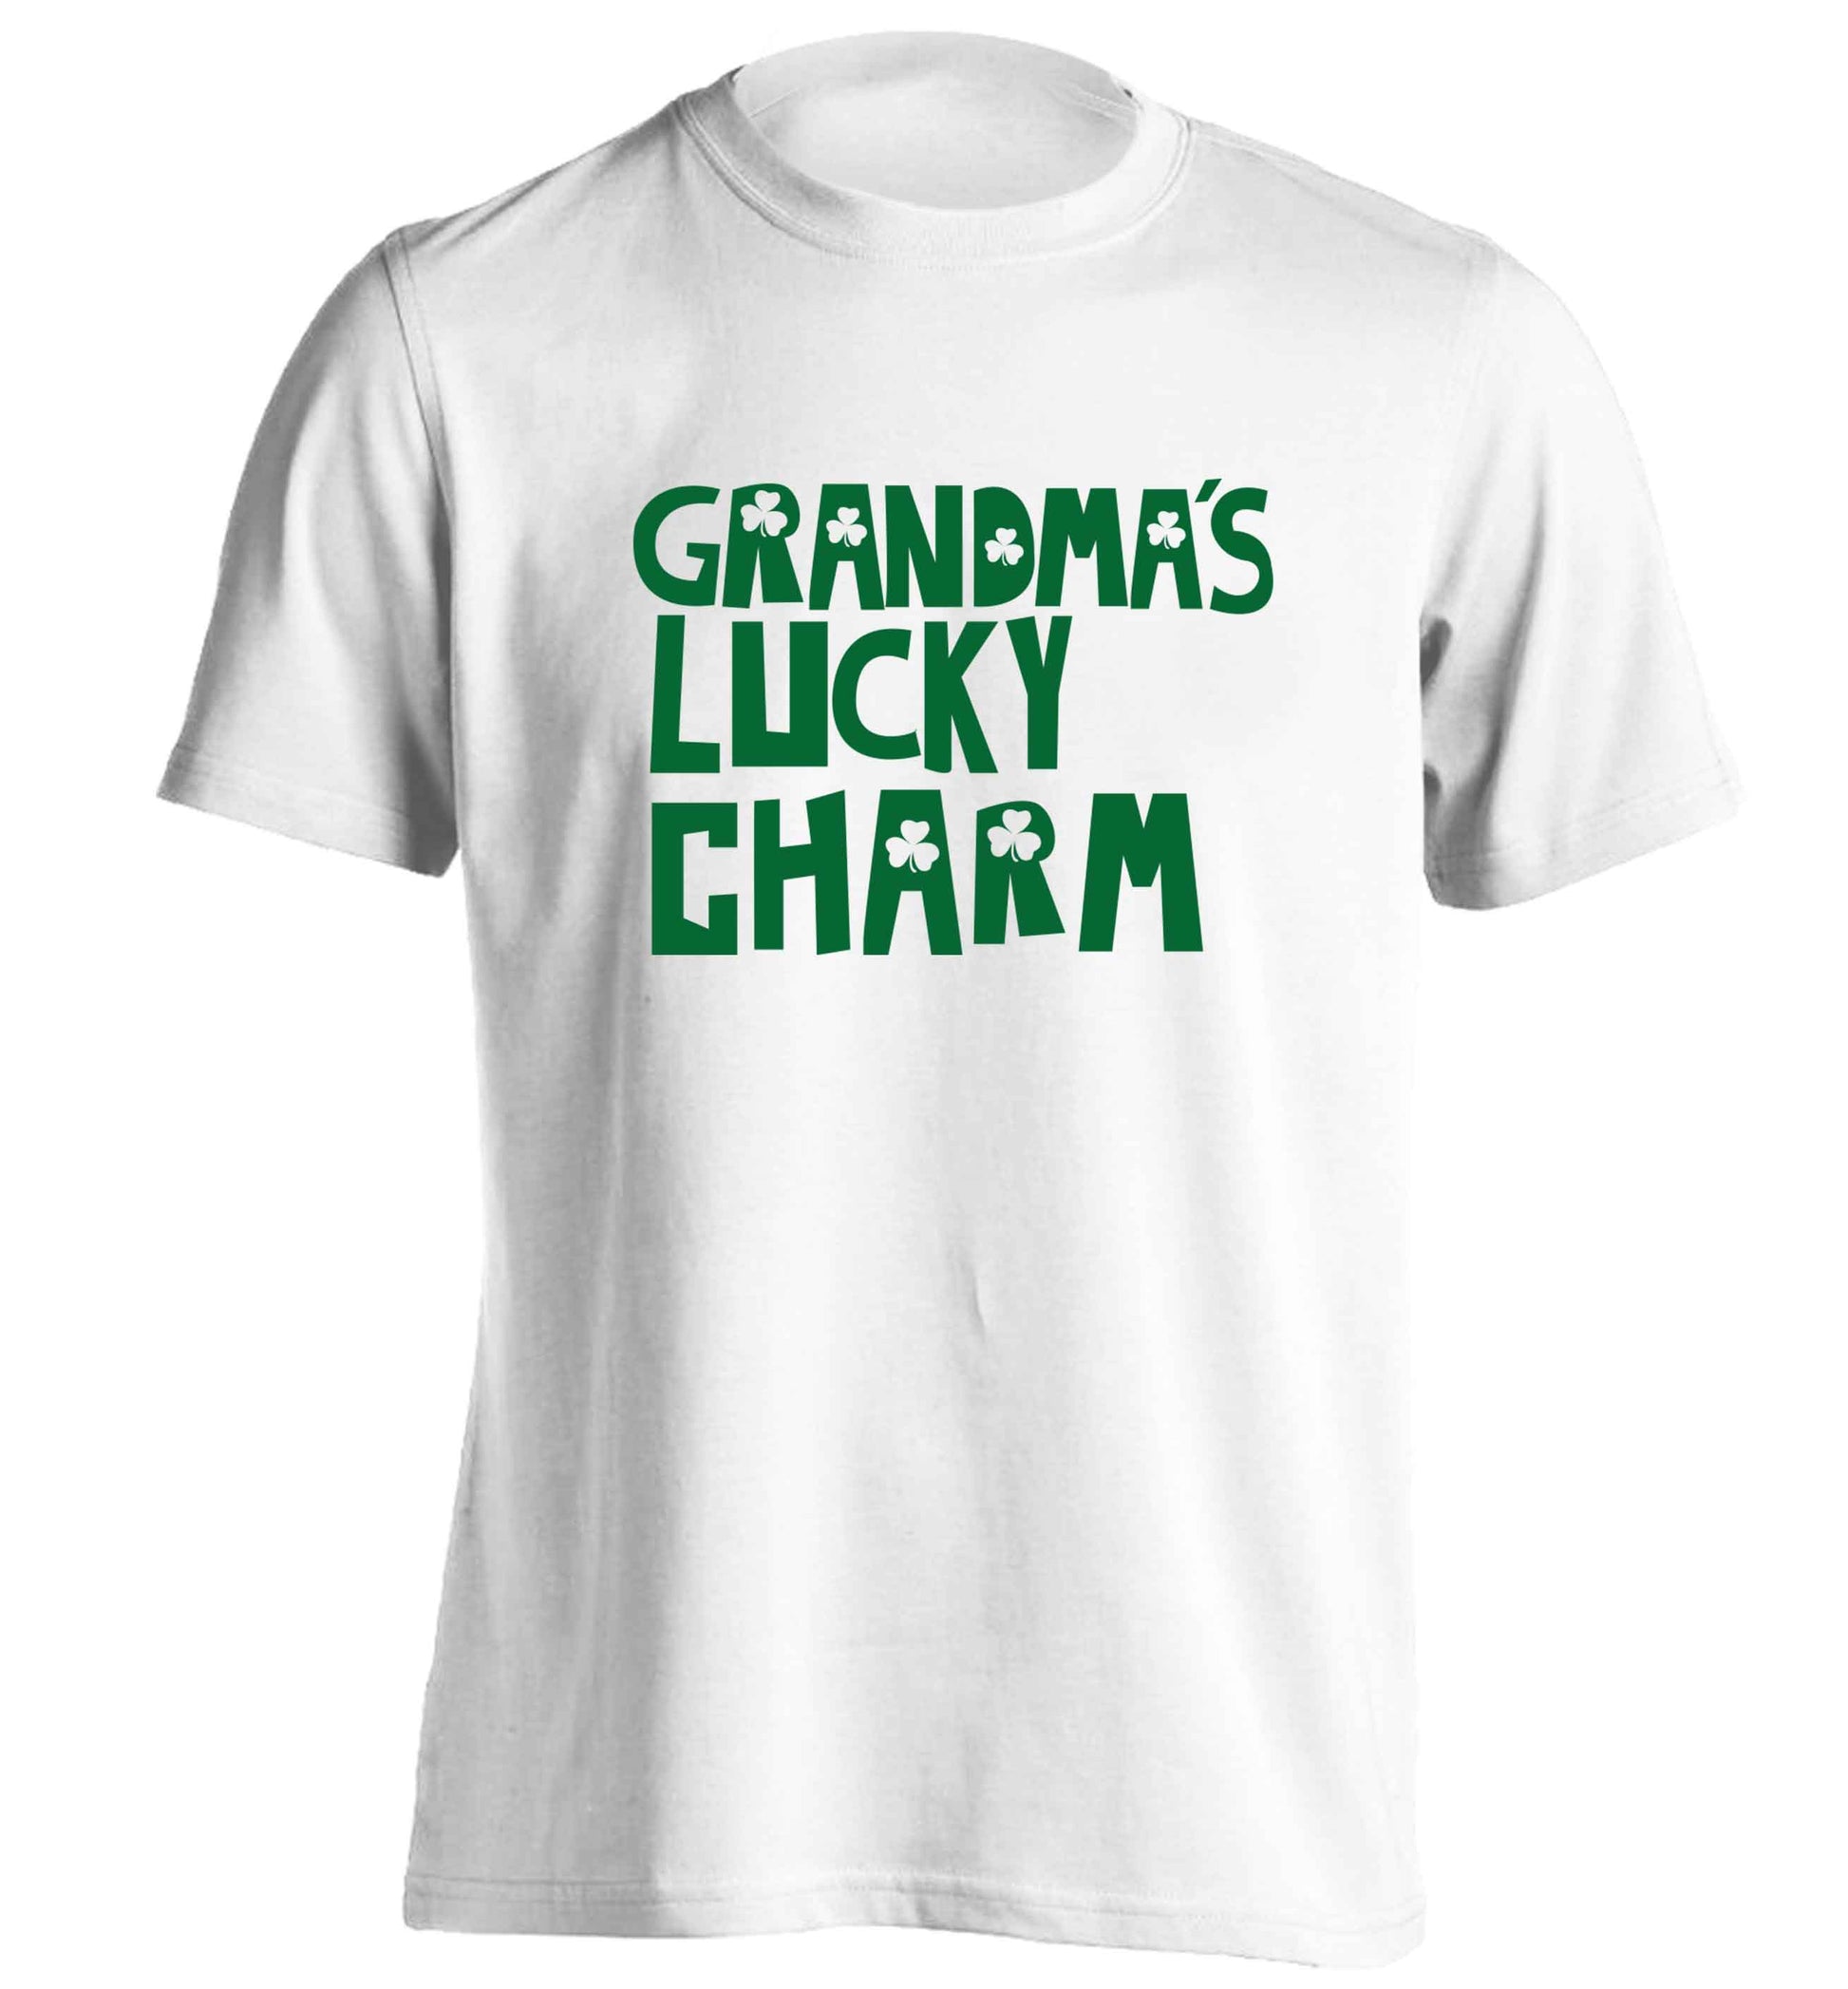 Grandma's lucky charm adults unisex white Tshirt 2XL